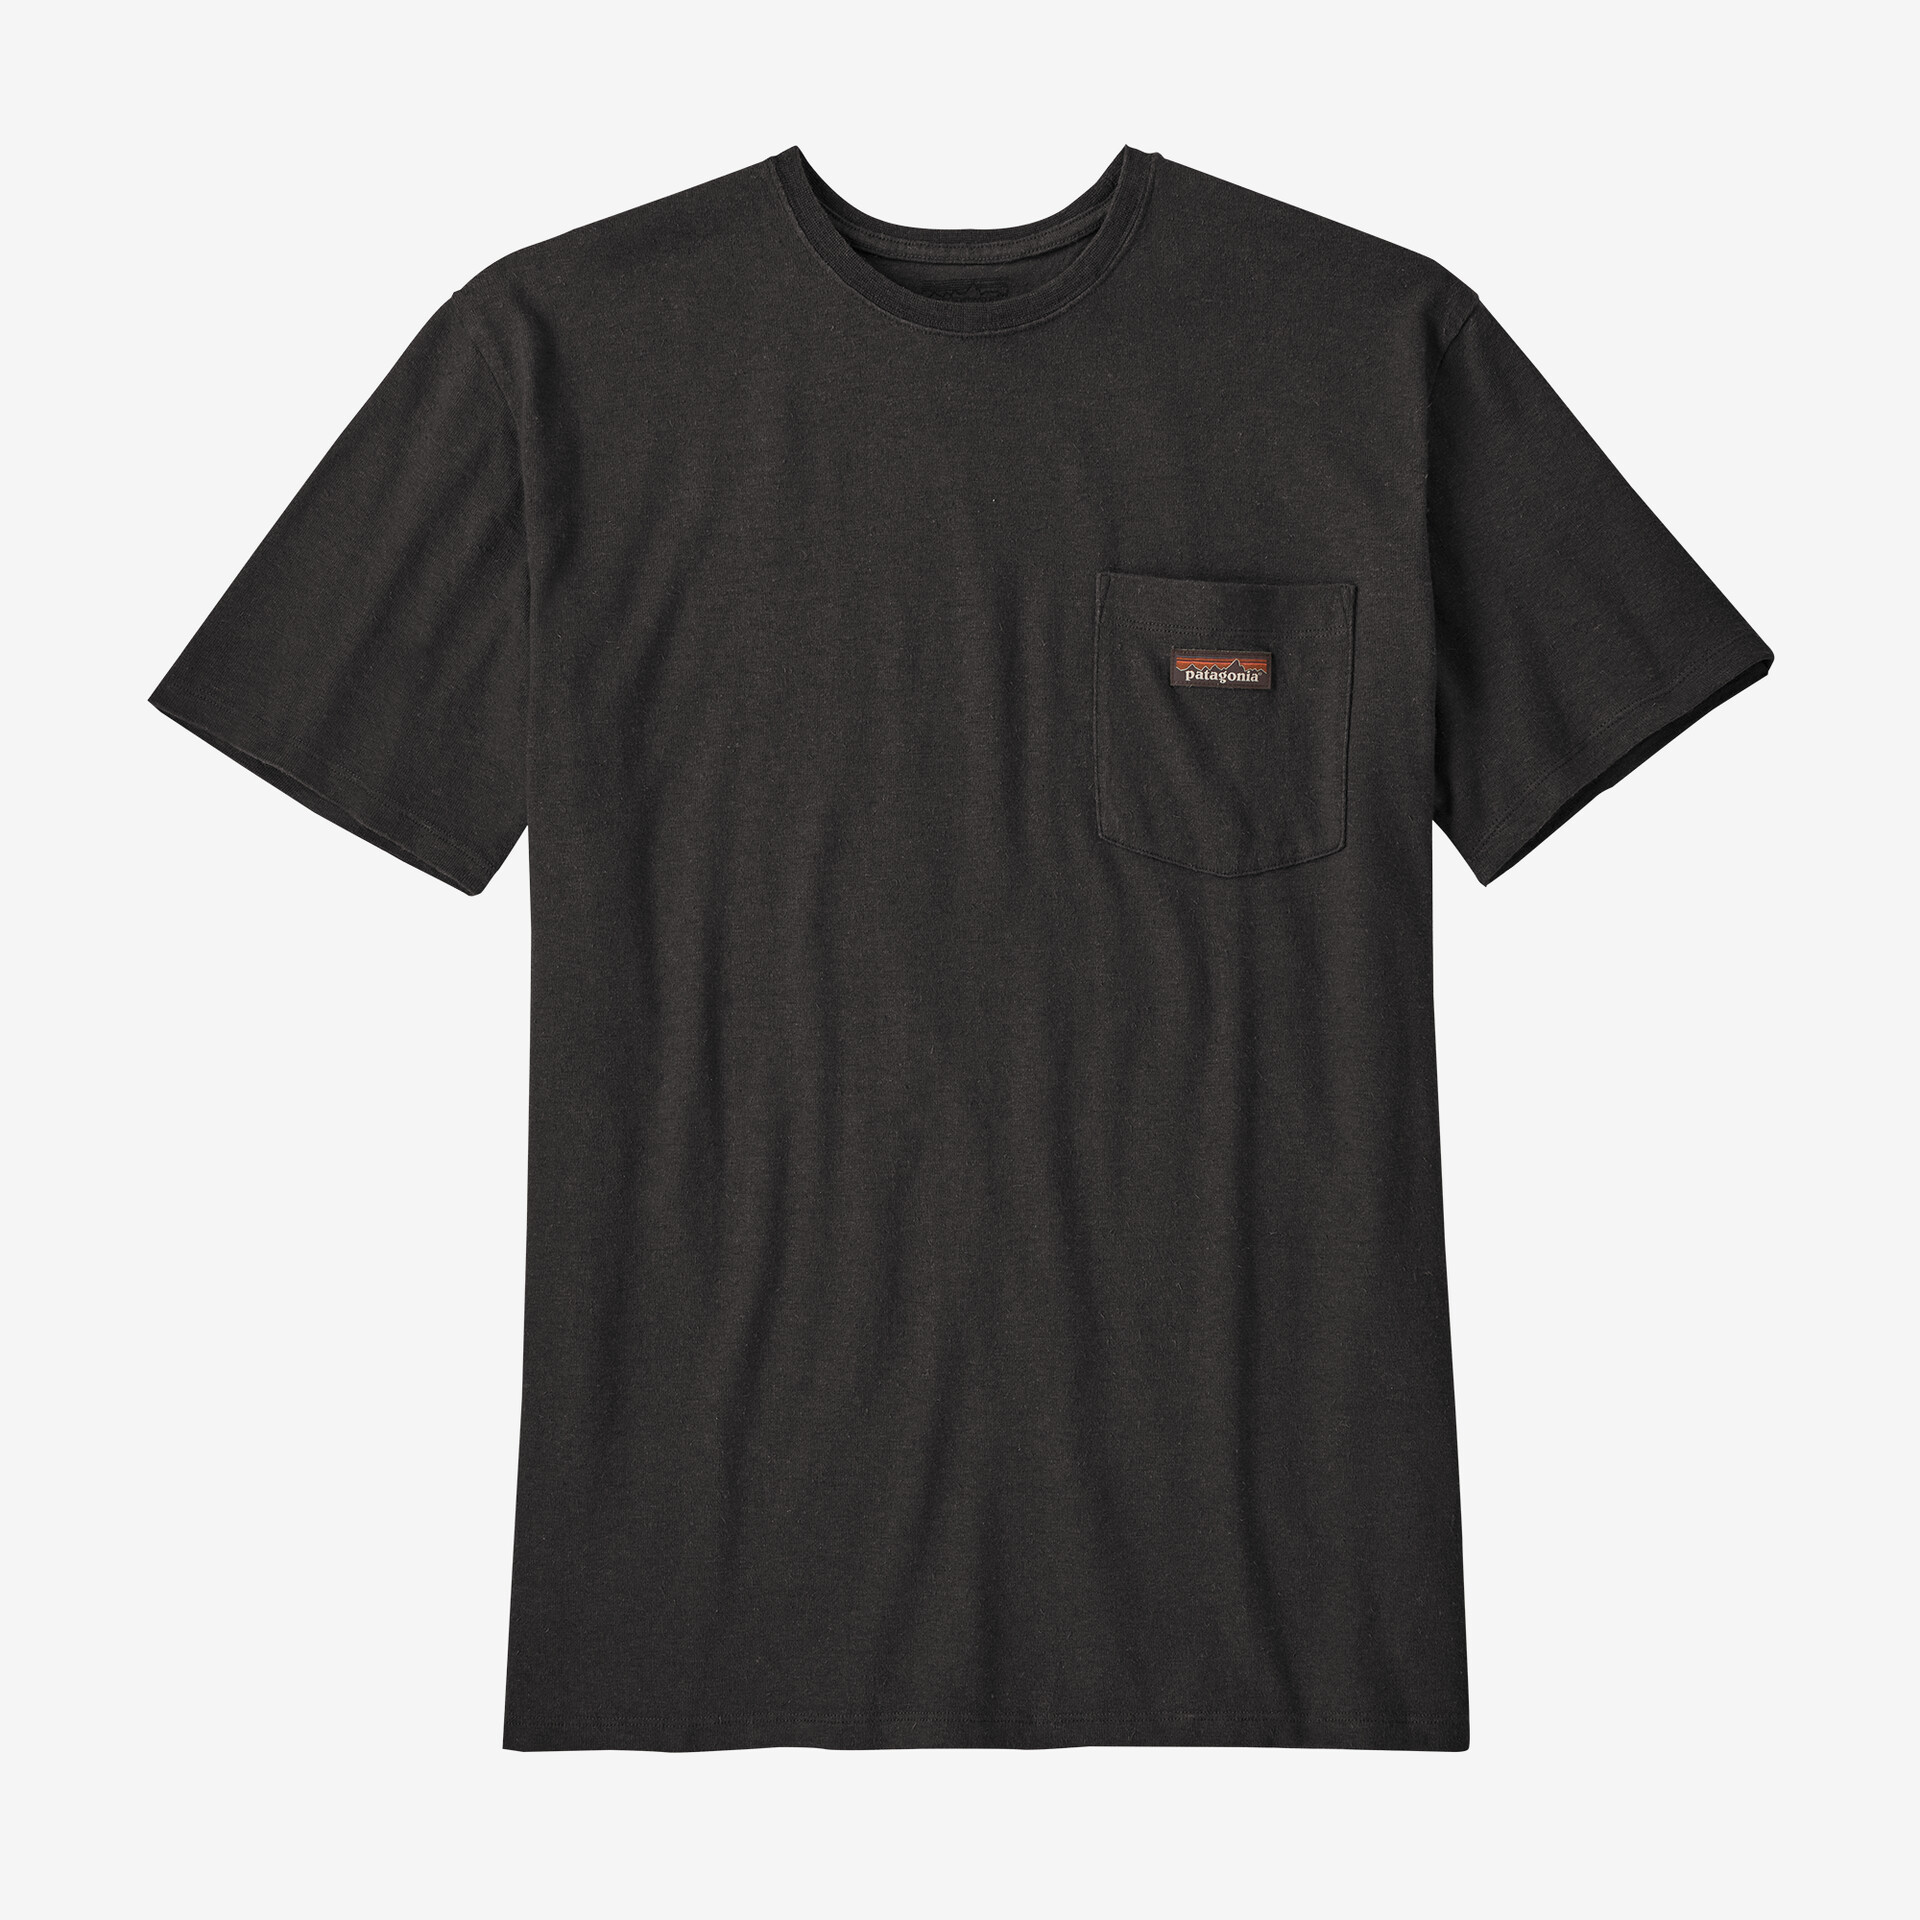 Мужская футболка с рабочим карманом Patagonia, черный мужская ответственная футболка с логотипом и карманом patagonia черный